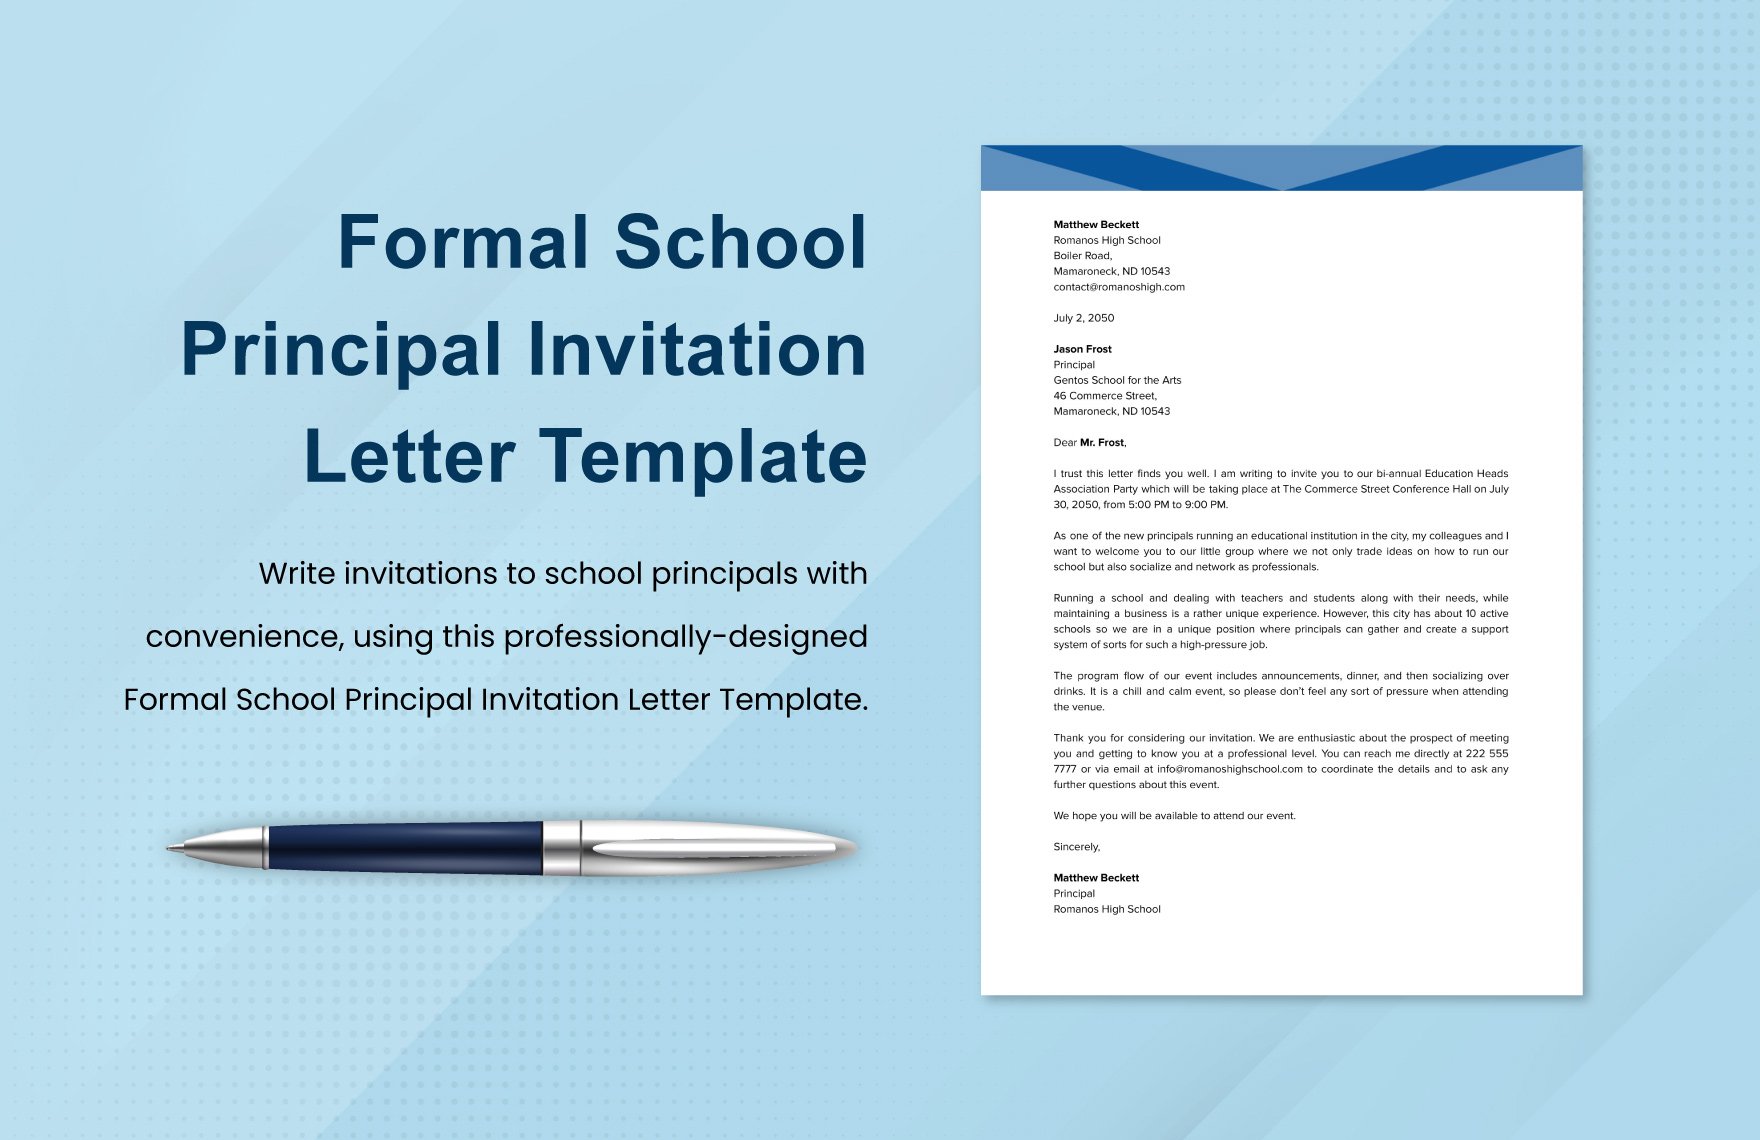 Formal School Principal Invitation Letter Template